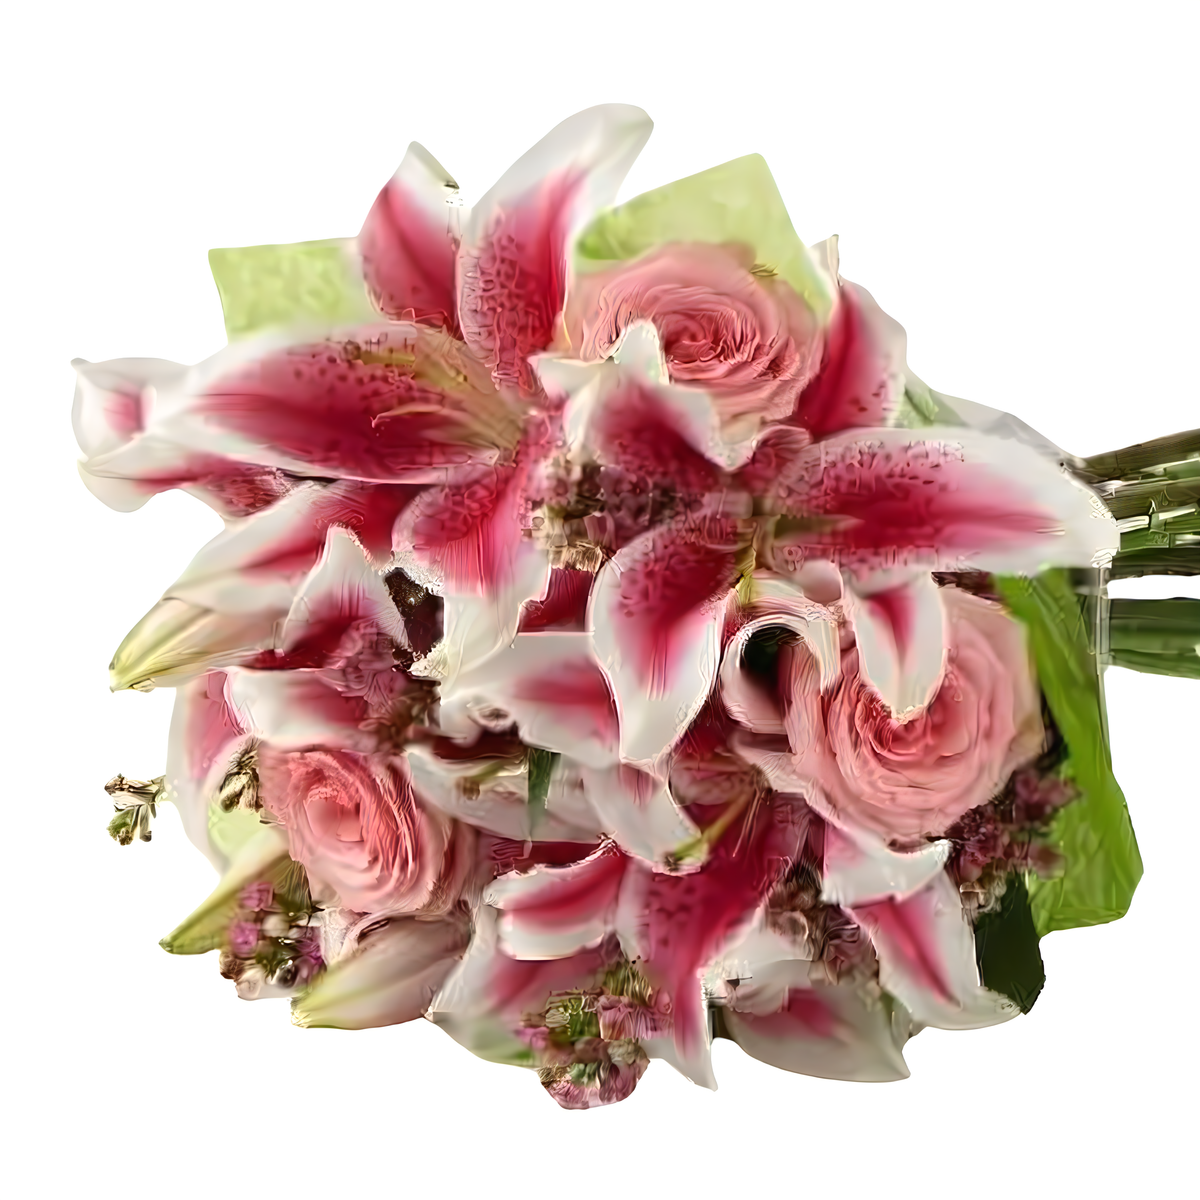 Manhattan Flower Delivery - The Madison Bouquet - Birthdays